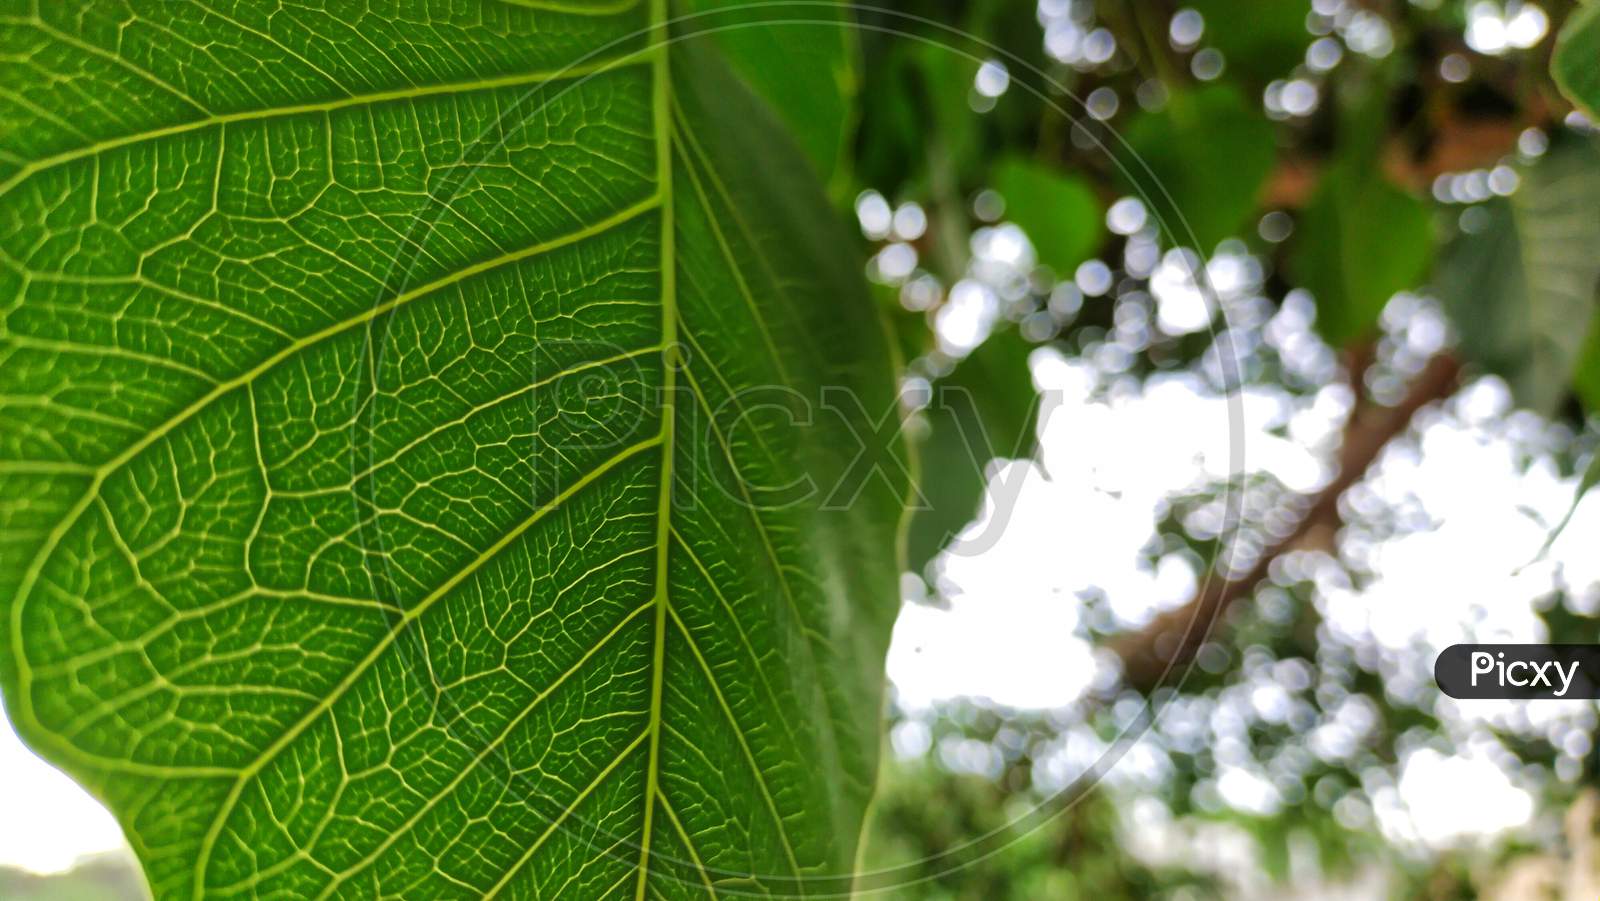 Peepal leaf or bodhi leave